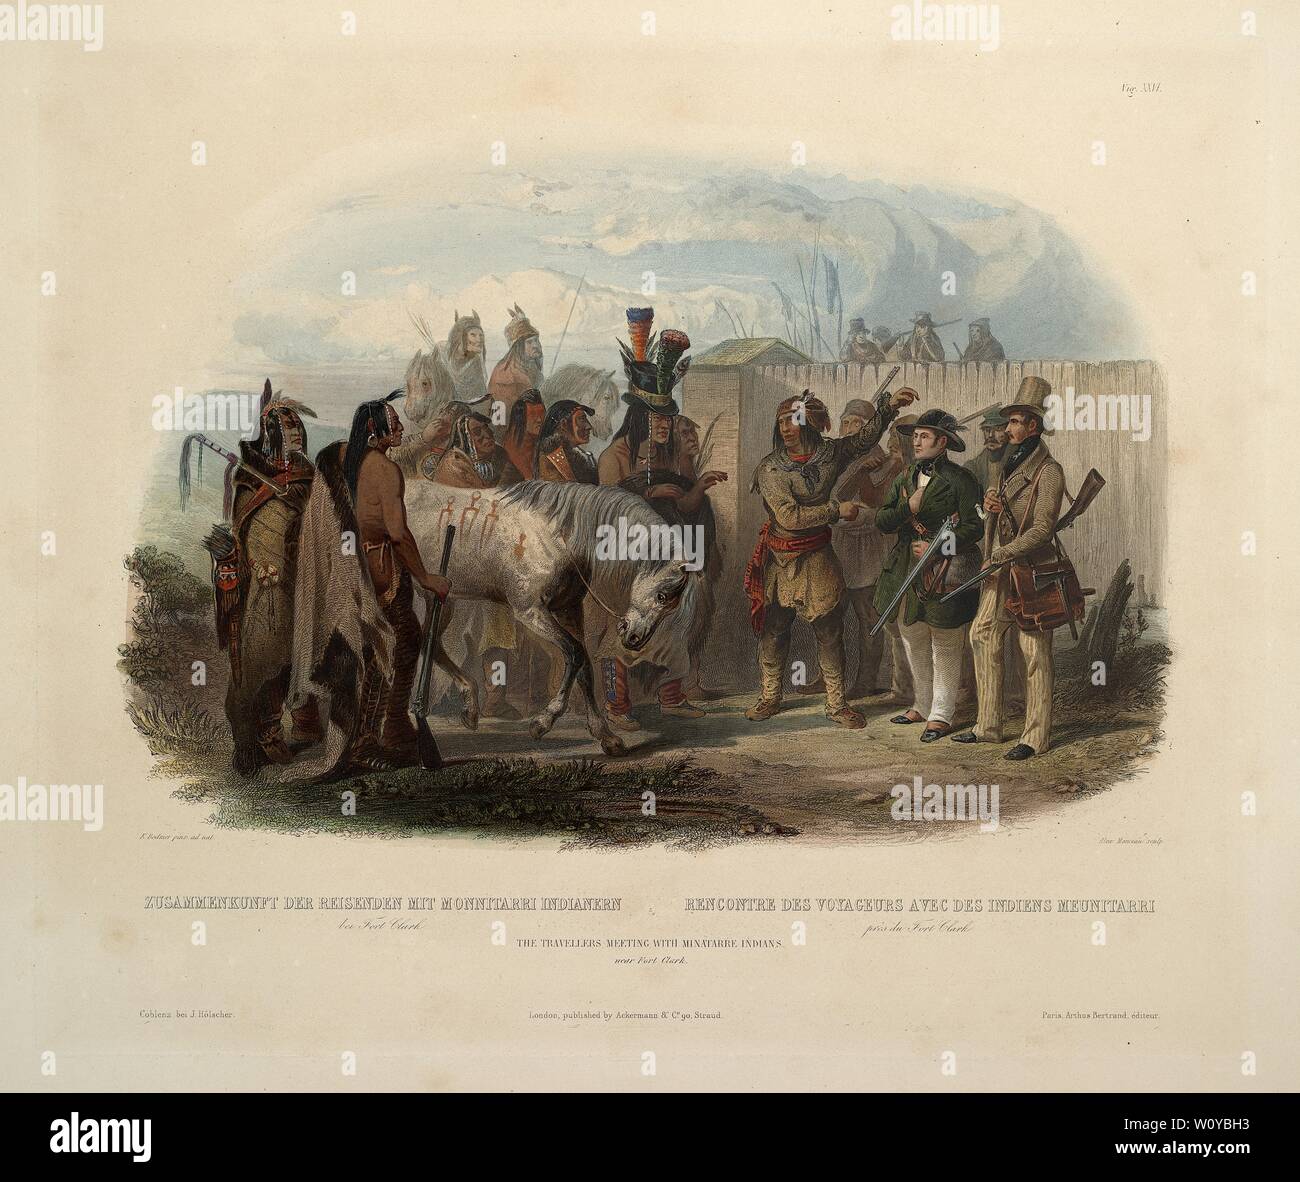 Die Reisenden Treffen mit Minatarre Indianer in der Nähe von Fort Clark - Karl Bodmer Aquatinta von Reisen in das Innere von Nordamerika Stockfoto